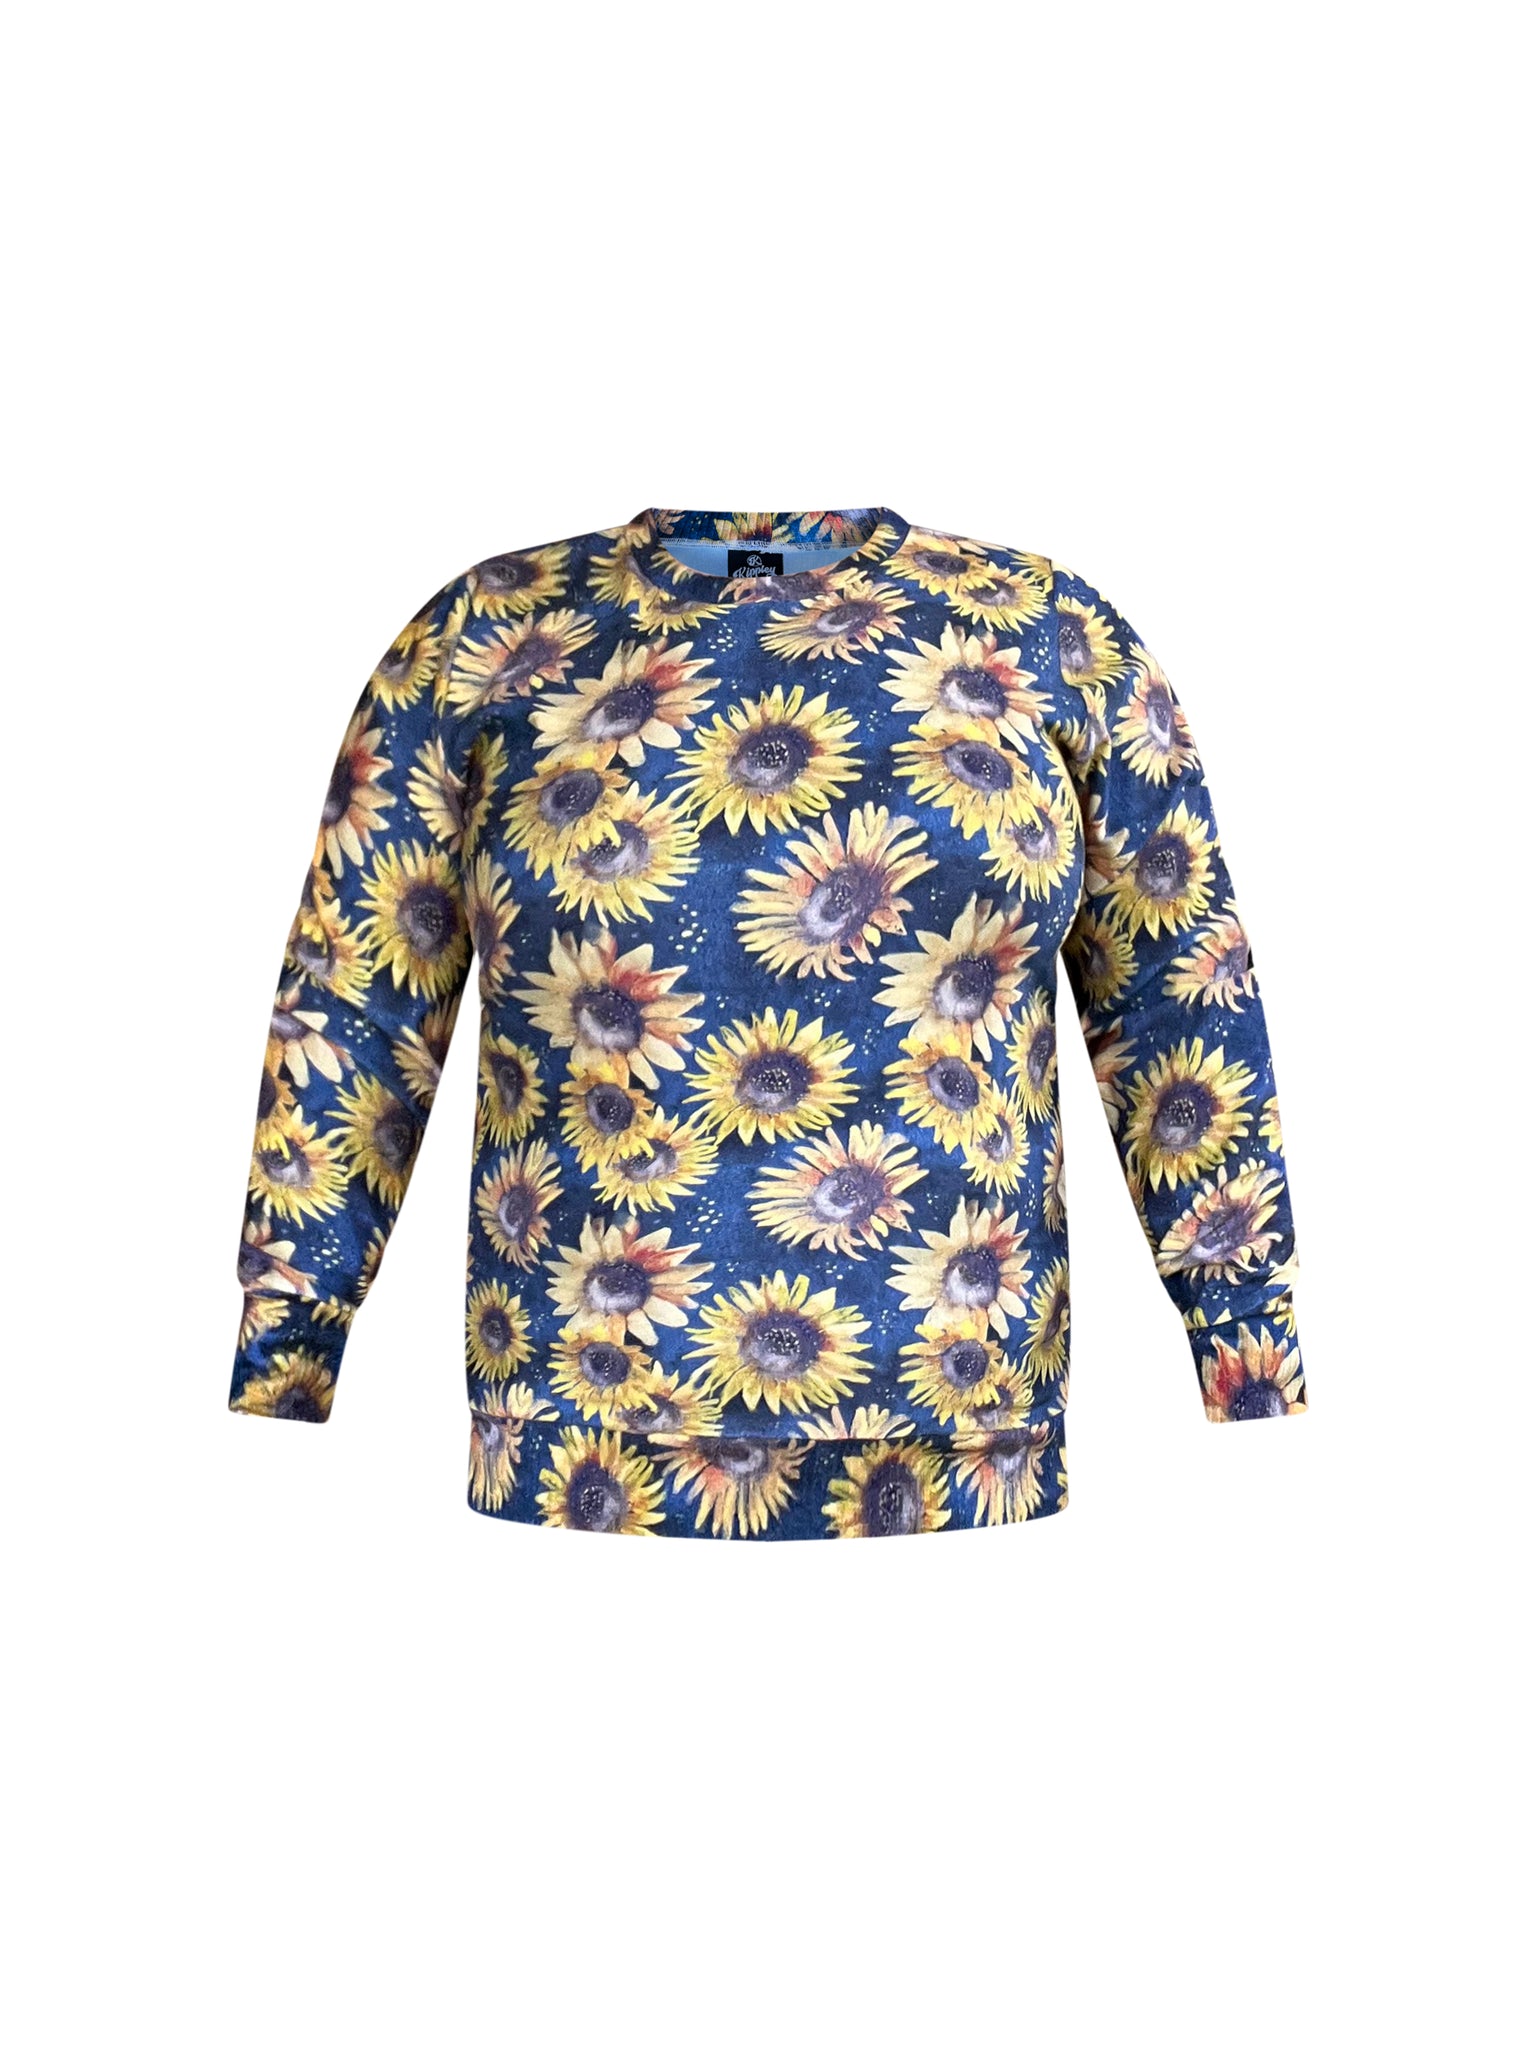 Ladies Sweatshirt in 'Sunflowers'